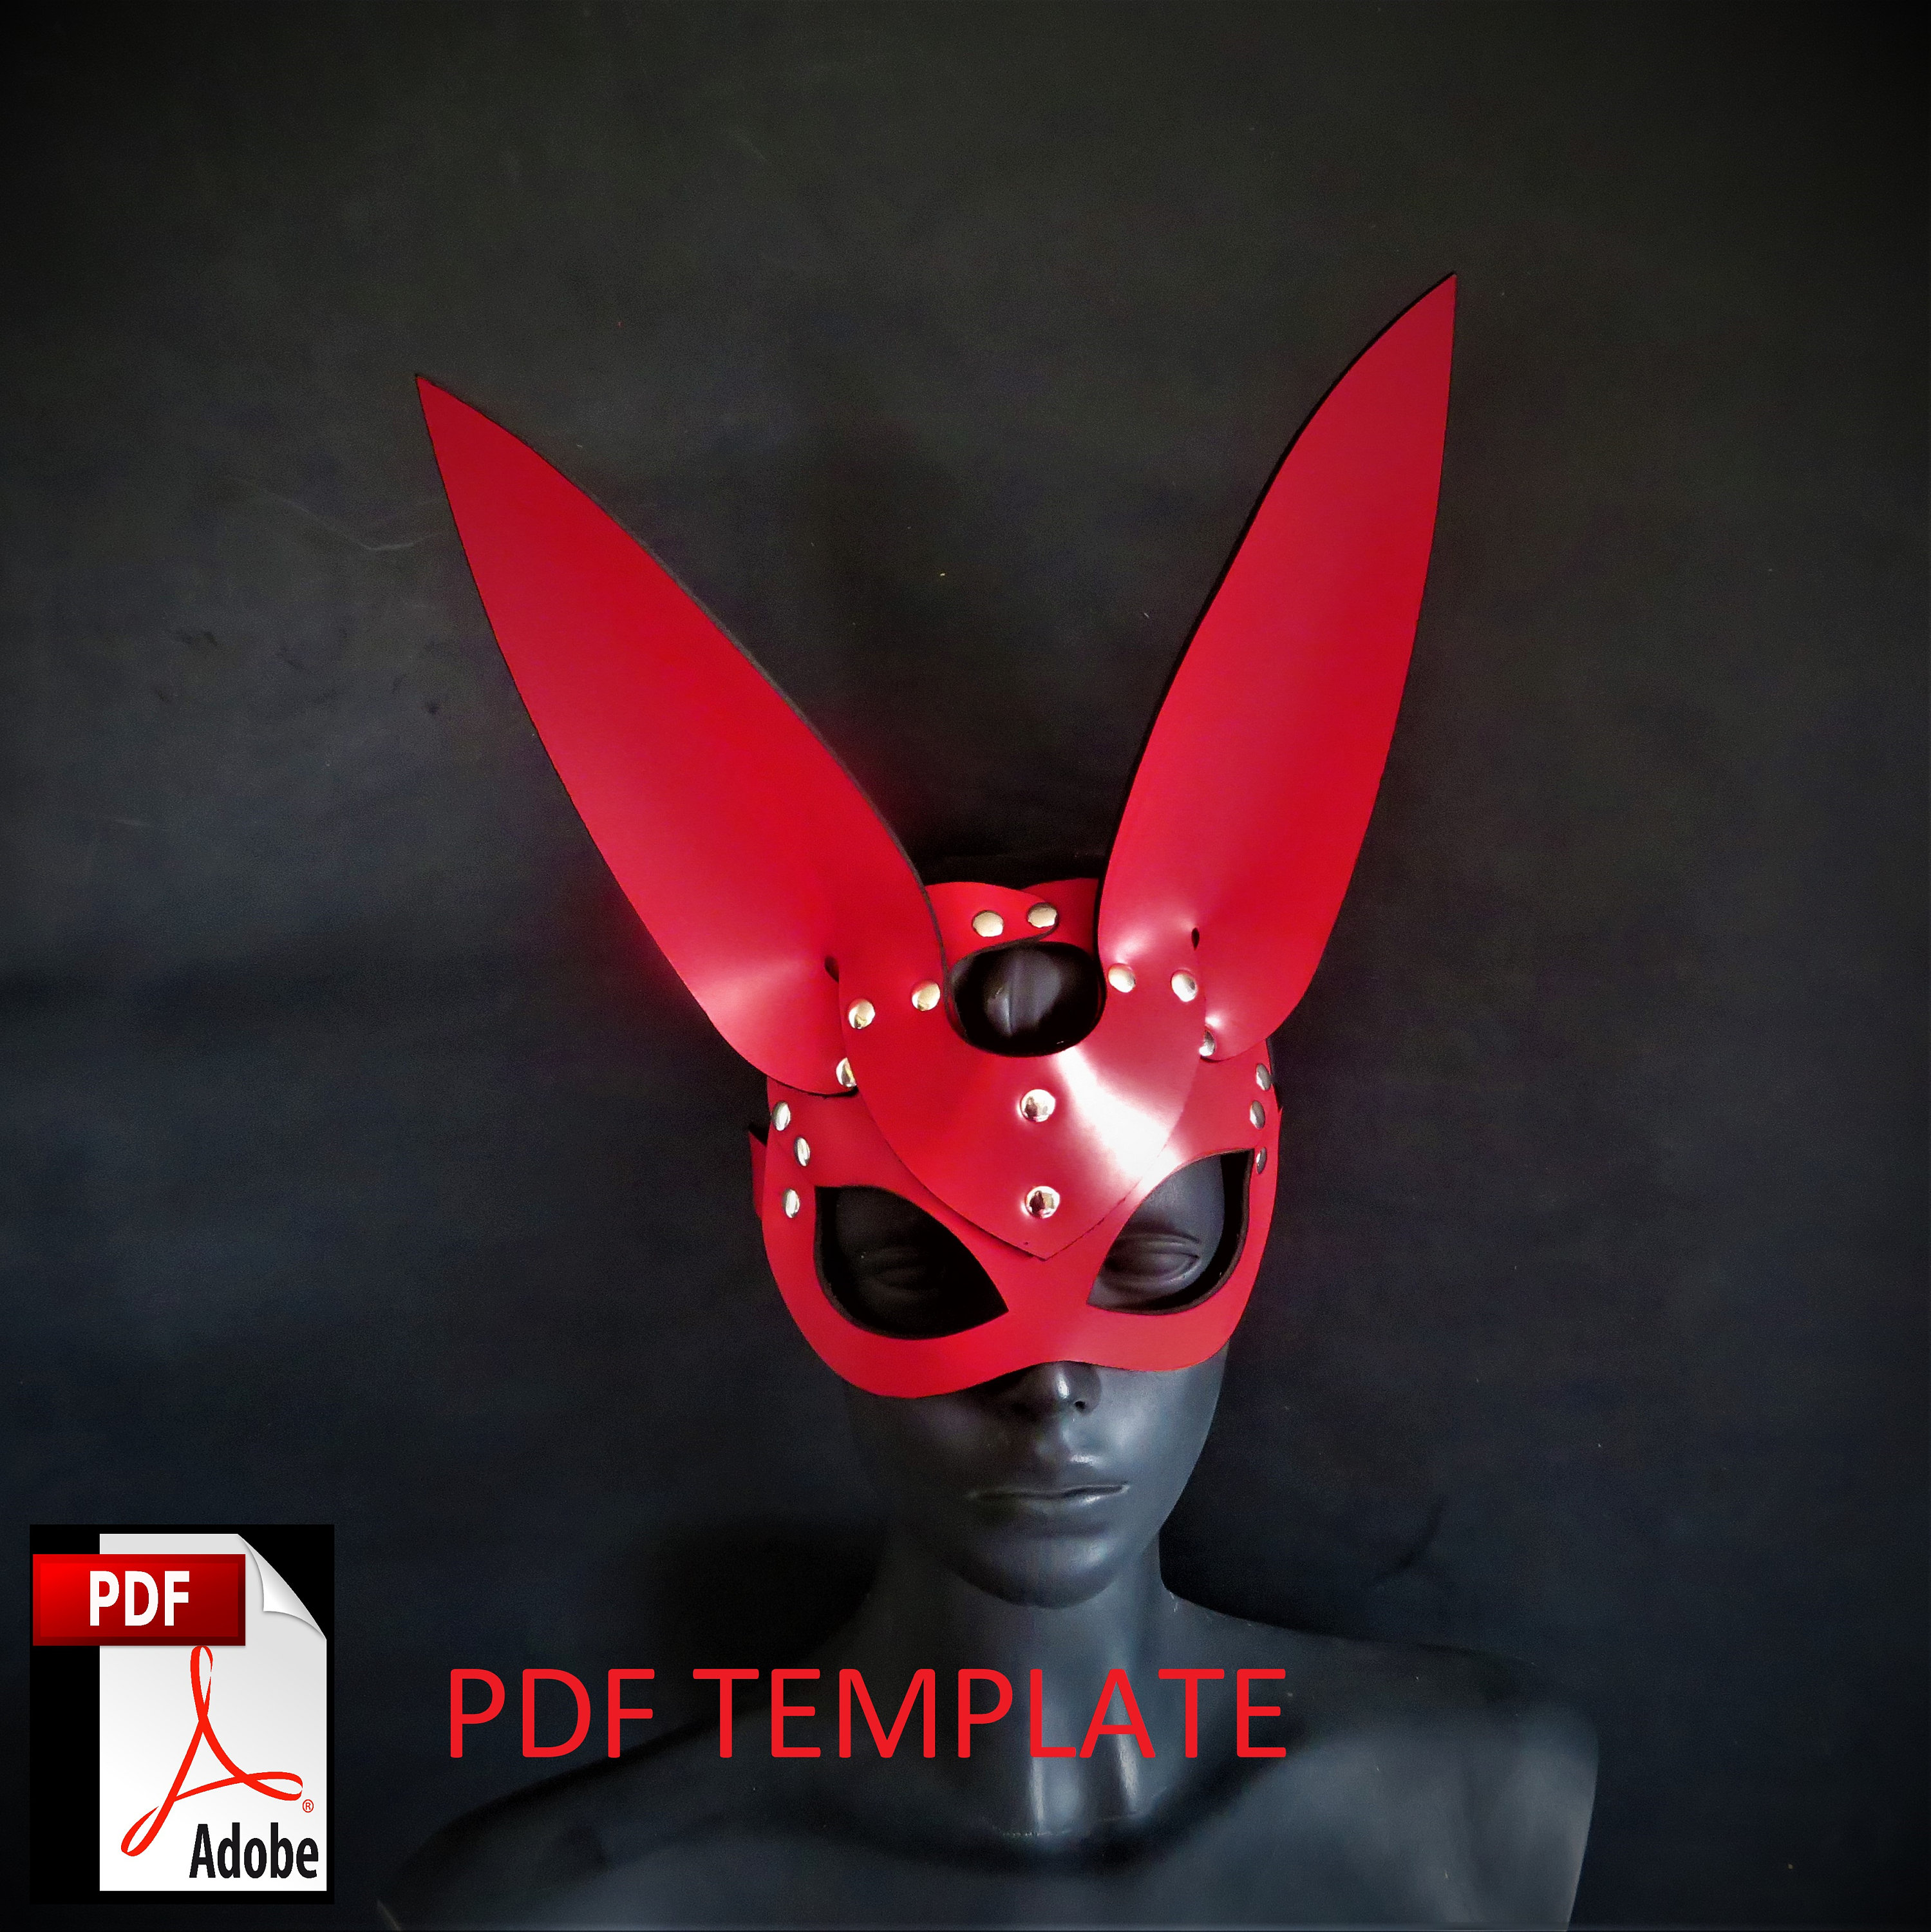 leather rabbit mask, leather bunny mask, bdsm leather mask - Inspire Uplift